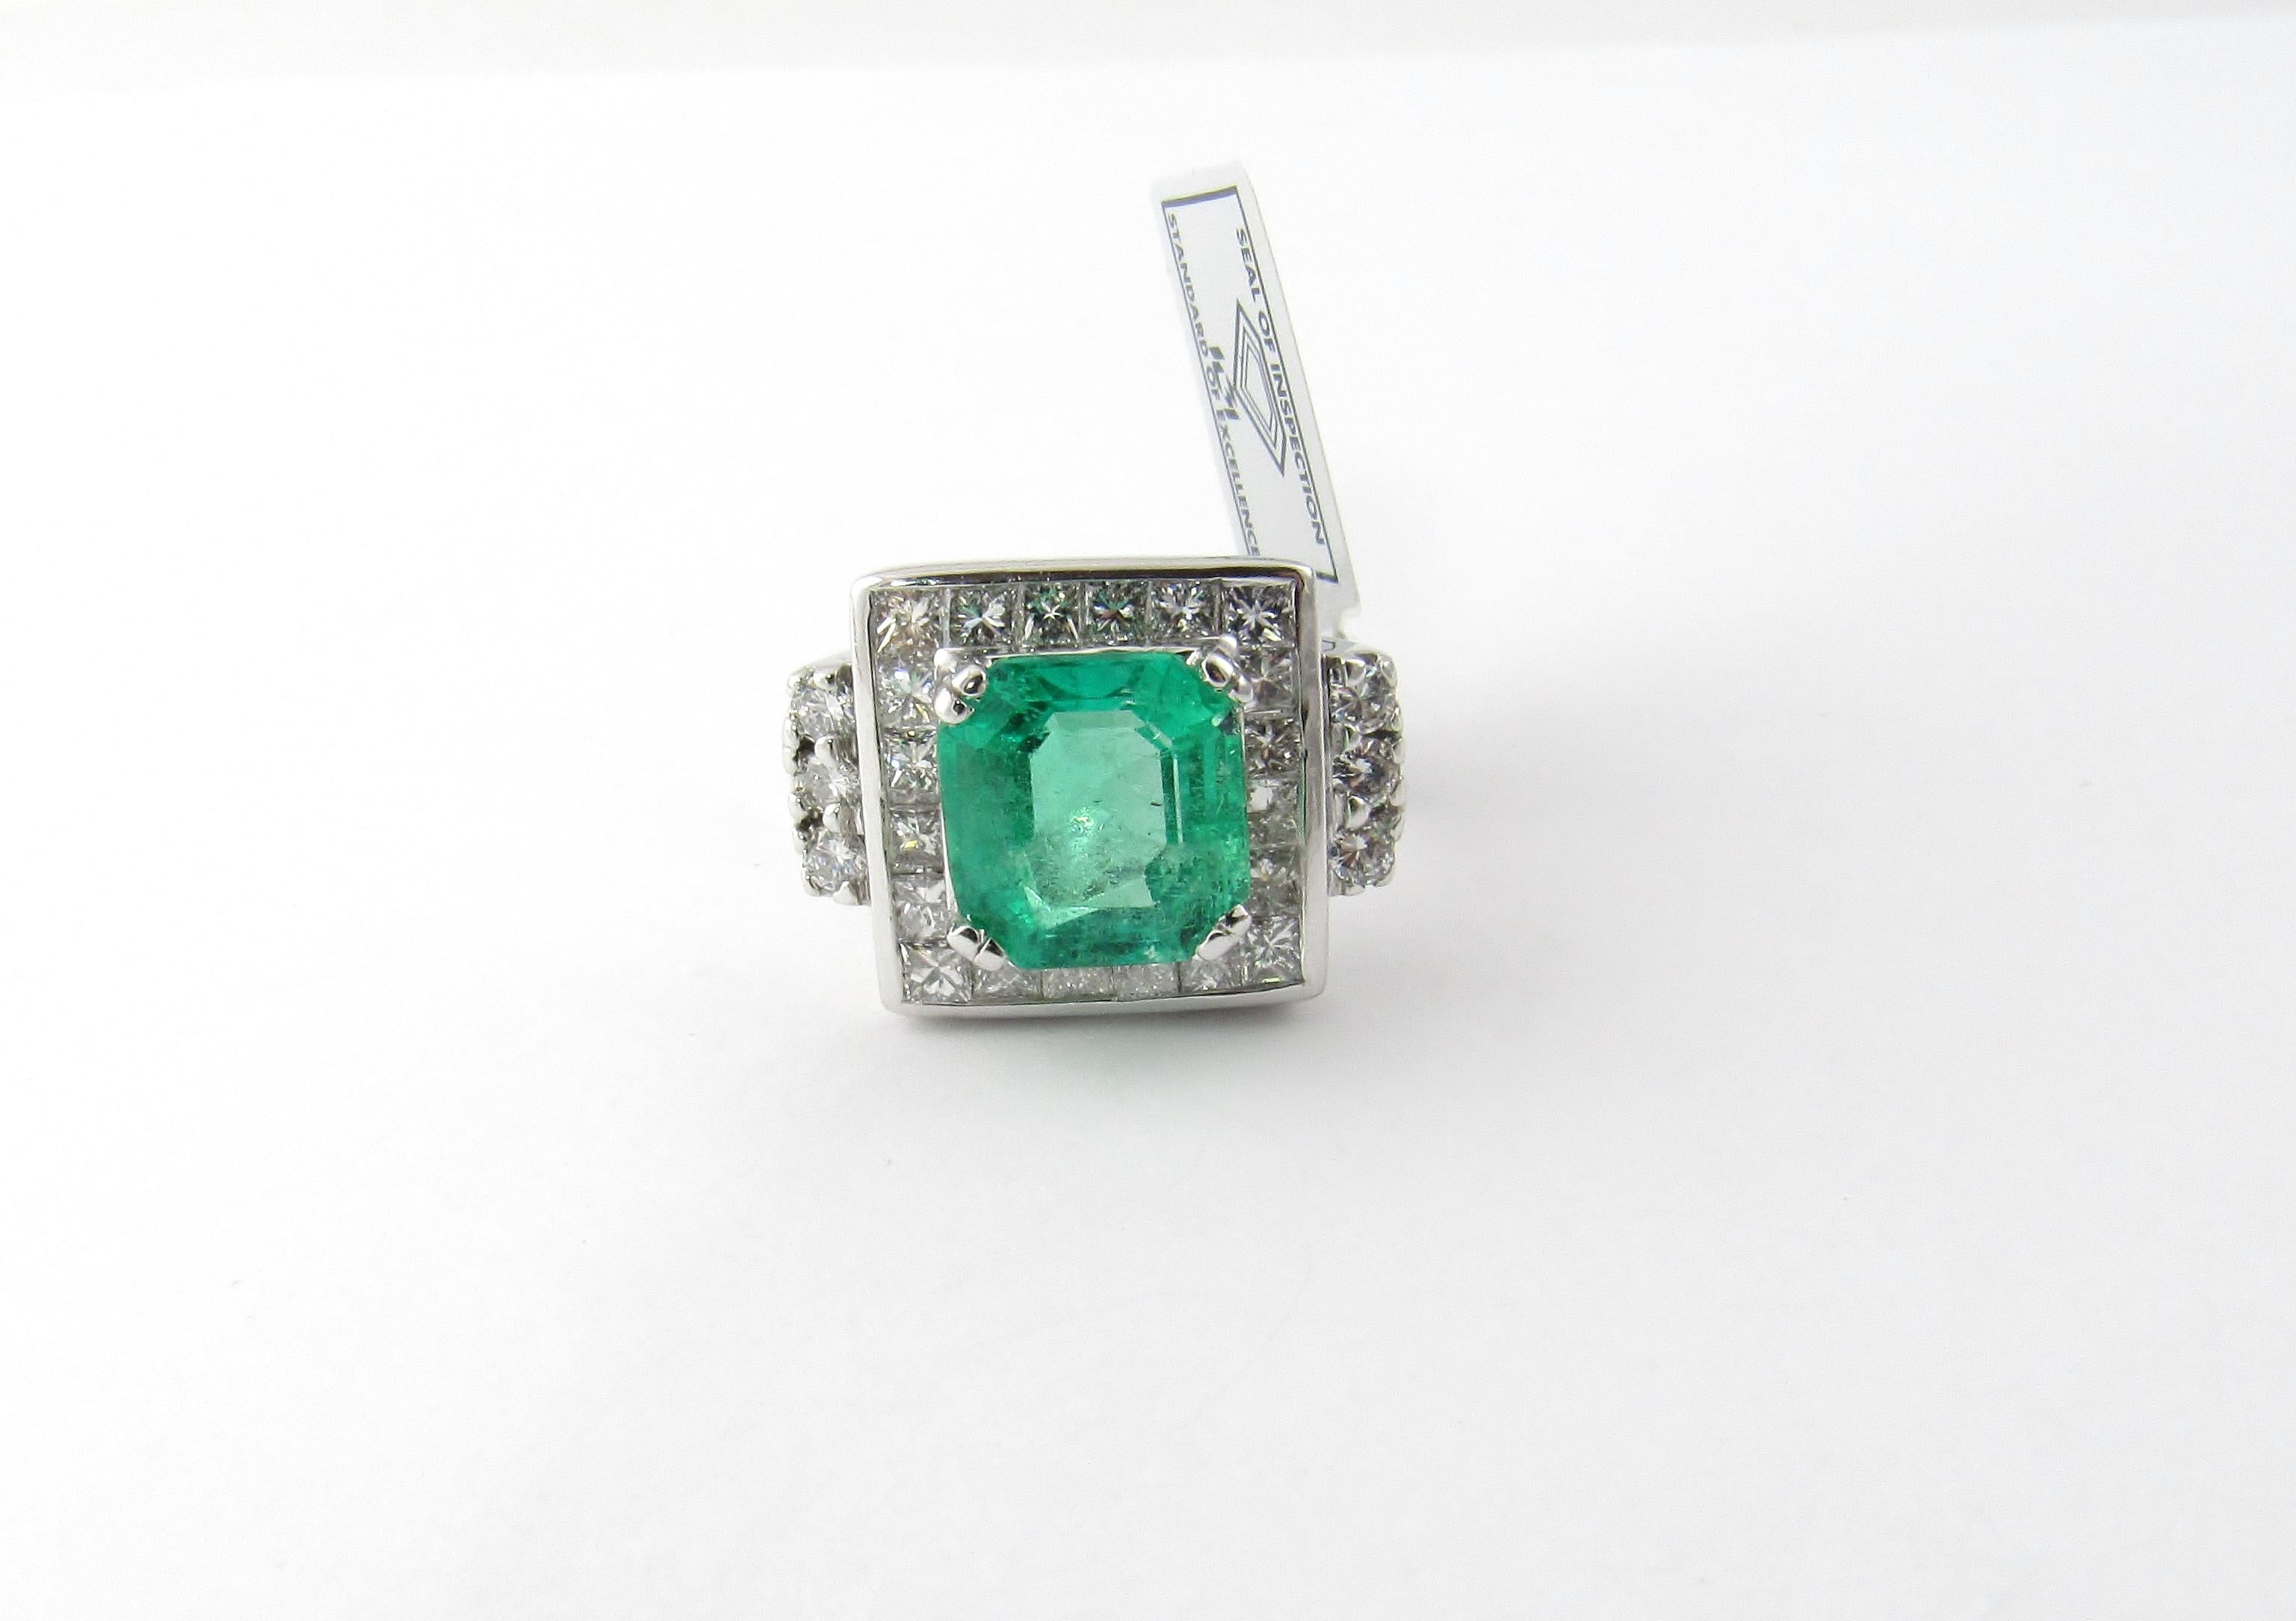 IGI zertifiziert Vintage 17K und 14K Weißgold natürlichen quadratischen Smaragd und Diamant-Ring Größe 8

Dieser Cocktailring mit natürlichem Smaragd und Diamanten ist ein echter Hingucker!

Der Ring ist mit 18K gestempelt. Bei einer